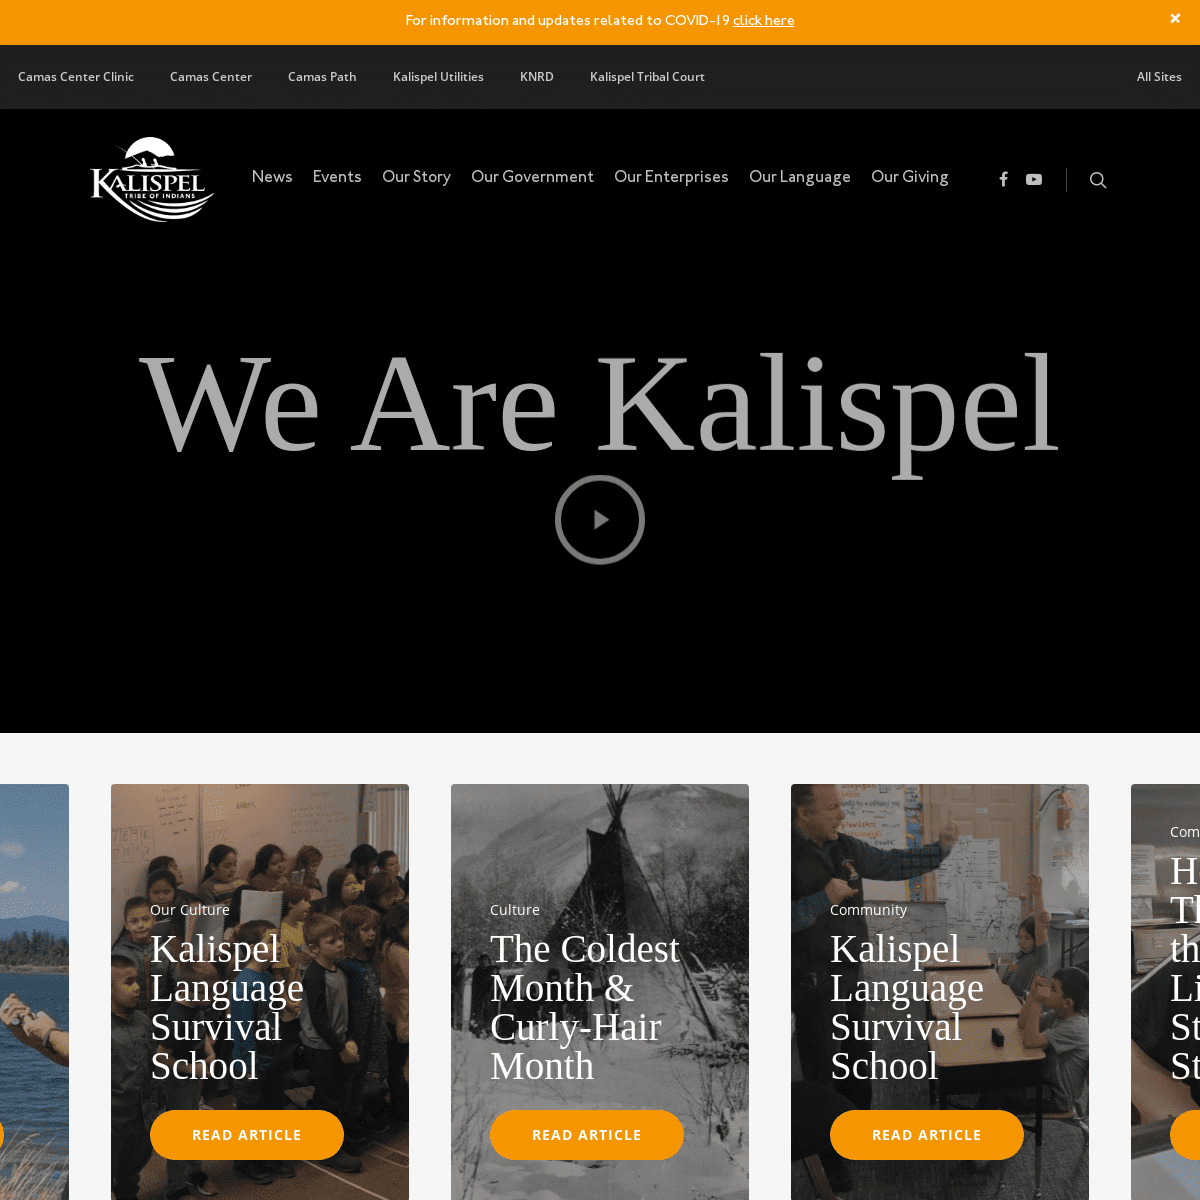 A complete backup of https://kalispeltribe.com